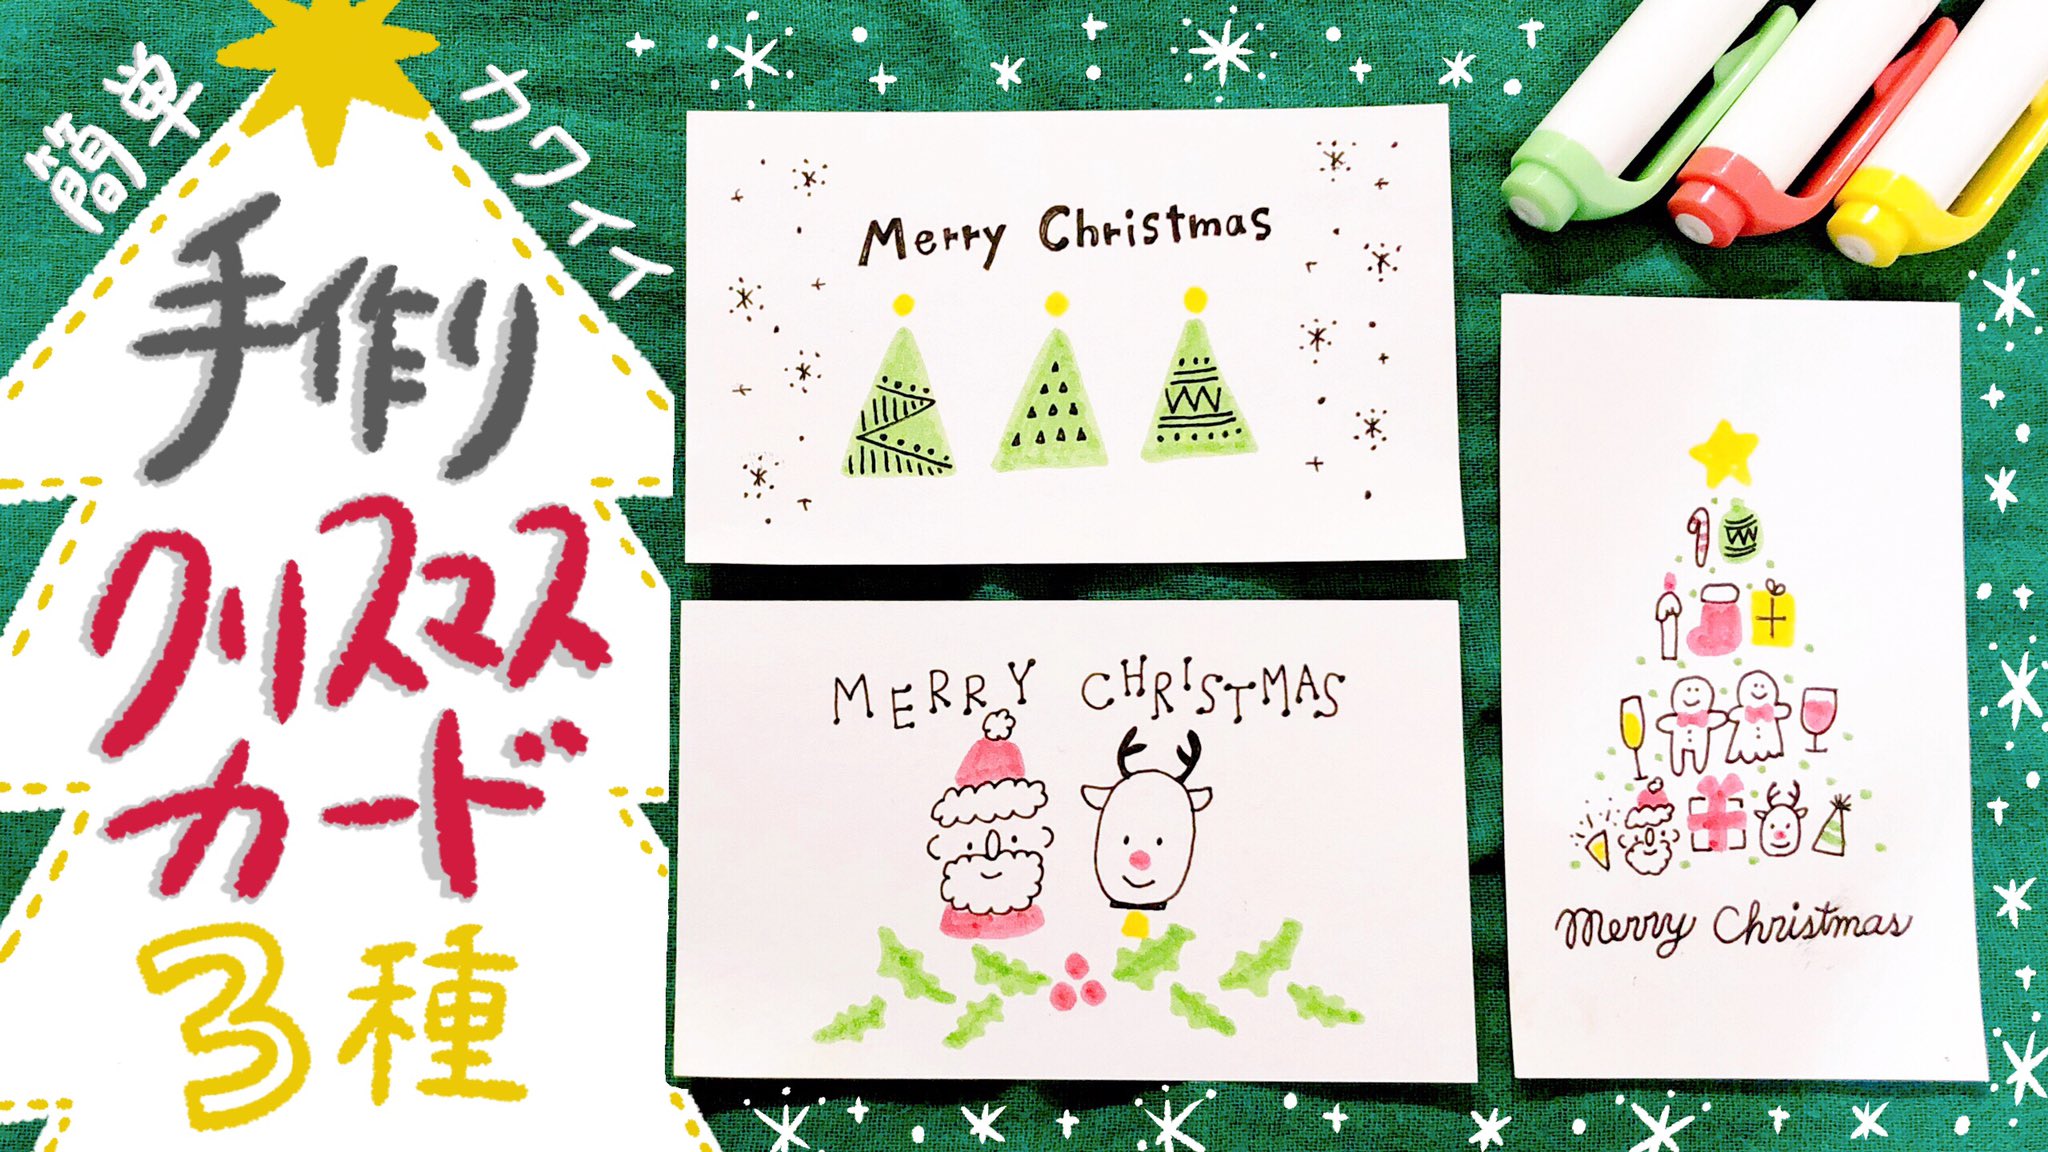 みちくさ ほっこりイラスト Di Twitter クリスマスイラストに続いて 手作りクリスマスカードのデザインも3種類描き方をyoutubeにup T Co S3fvld0mg7 クリスマスプレゼントと一緒に手書きのメッセージカードもぜひ 簡単イラスト クリスマスイラスト